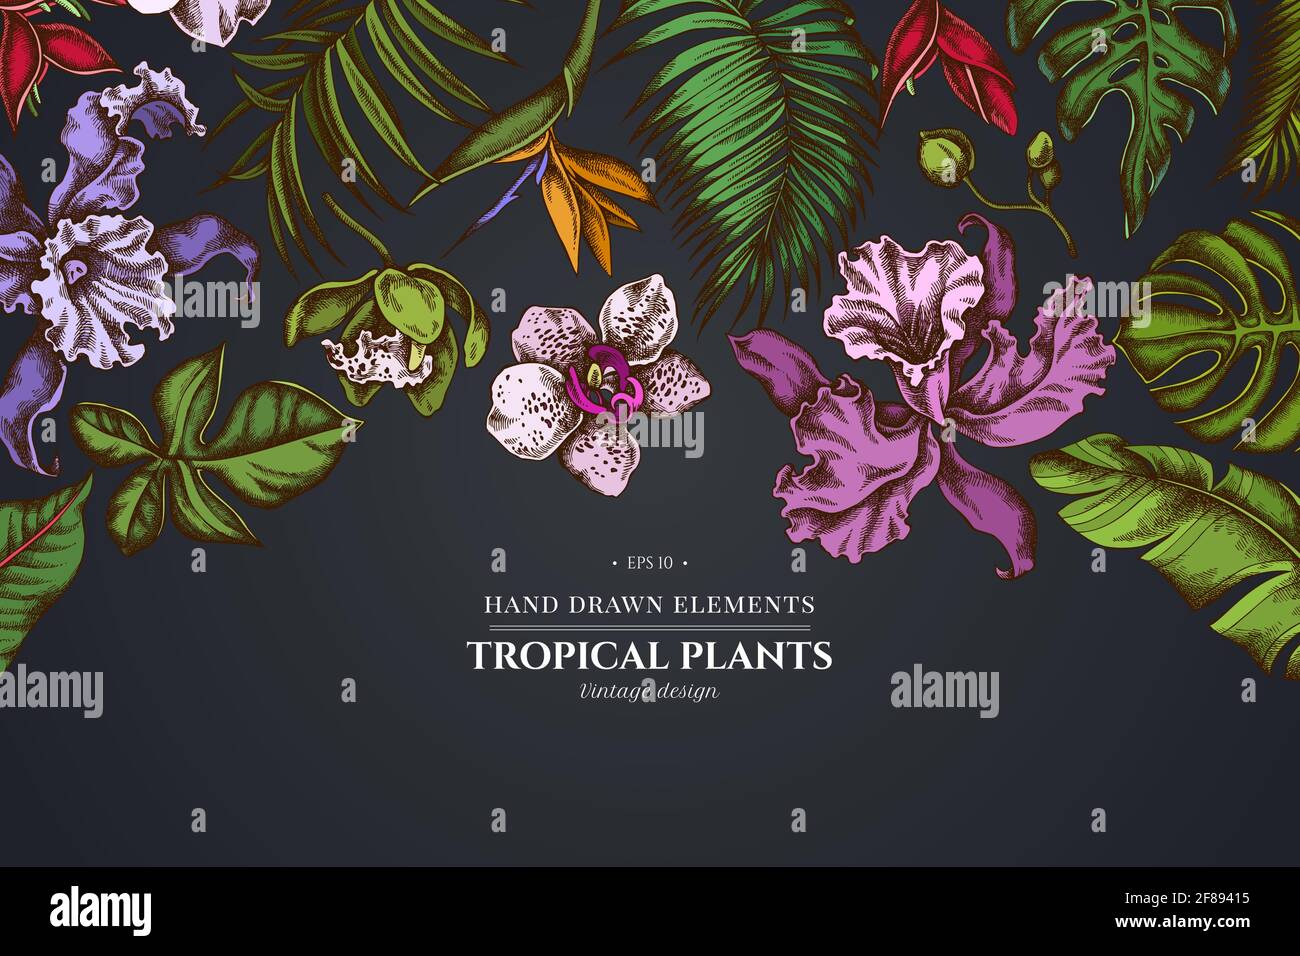 Motif floral sur fond sombre avec des monstères, des feuilles de palmier banane, de la strelitzia, de l'héliconie, des feuilles de palmier tropicales, orchidée Illustration de Vecteur